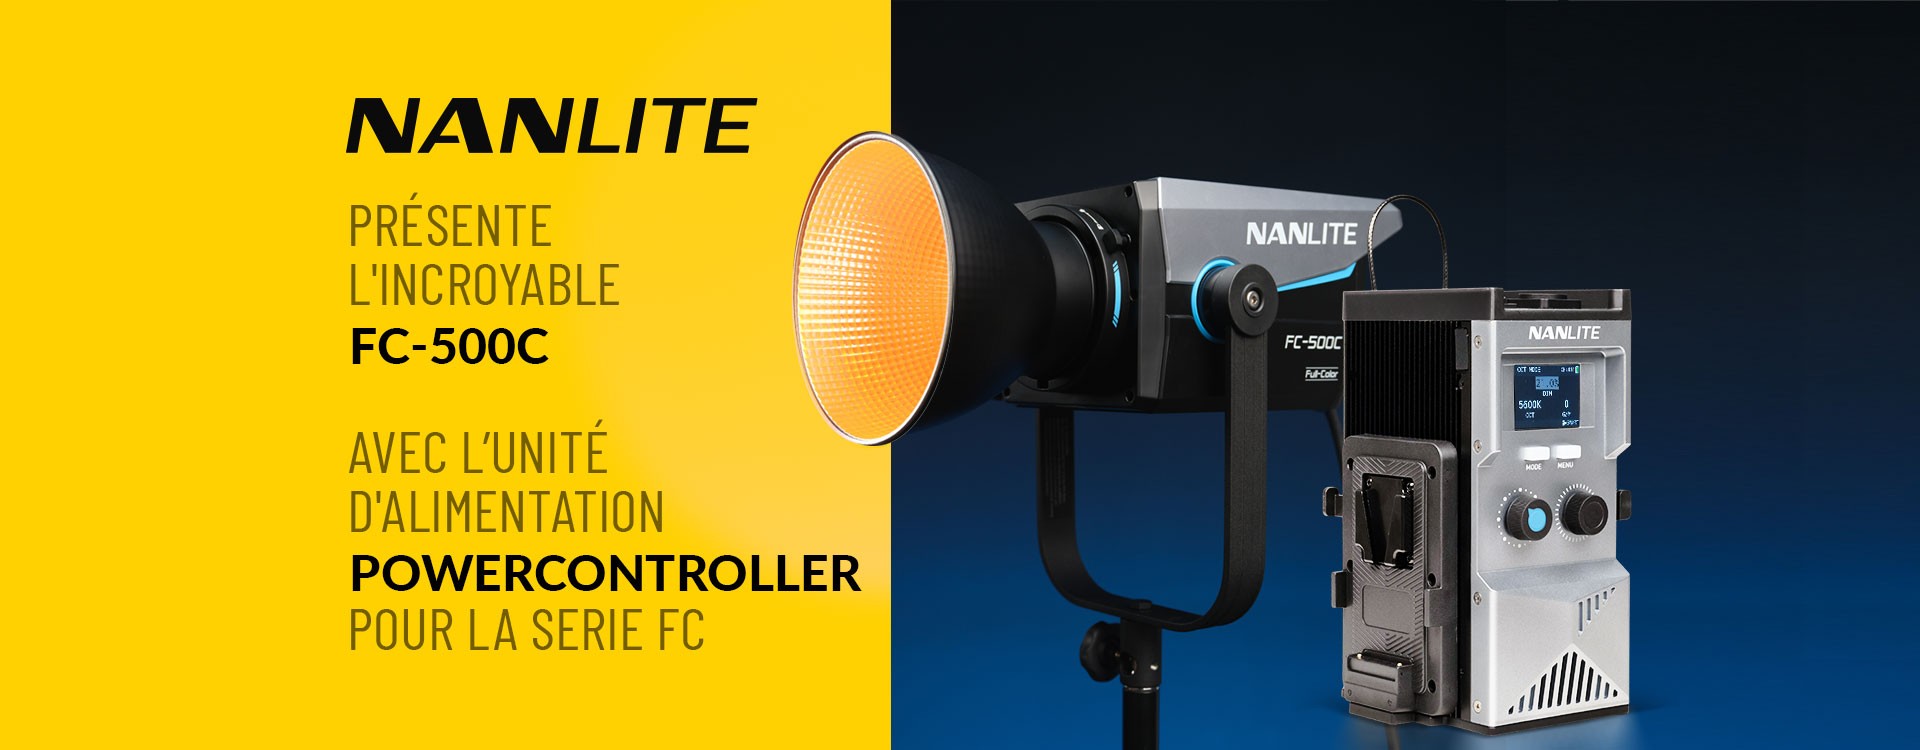 Nanlite présente l'incroyable FC-500C avec l'unité d'alimentation FC PowerController pour la série FC